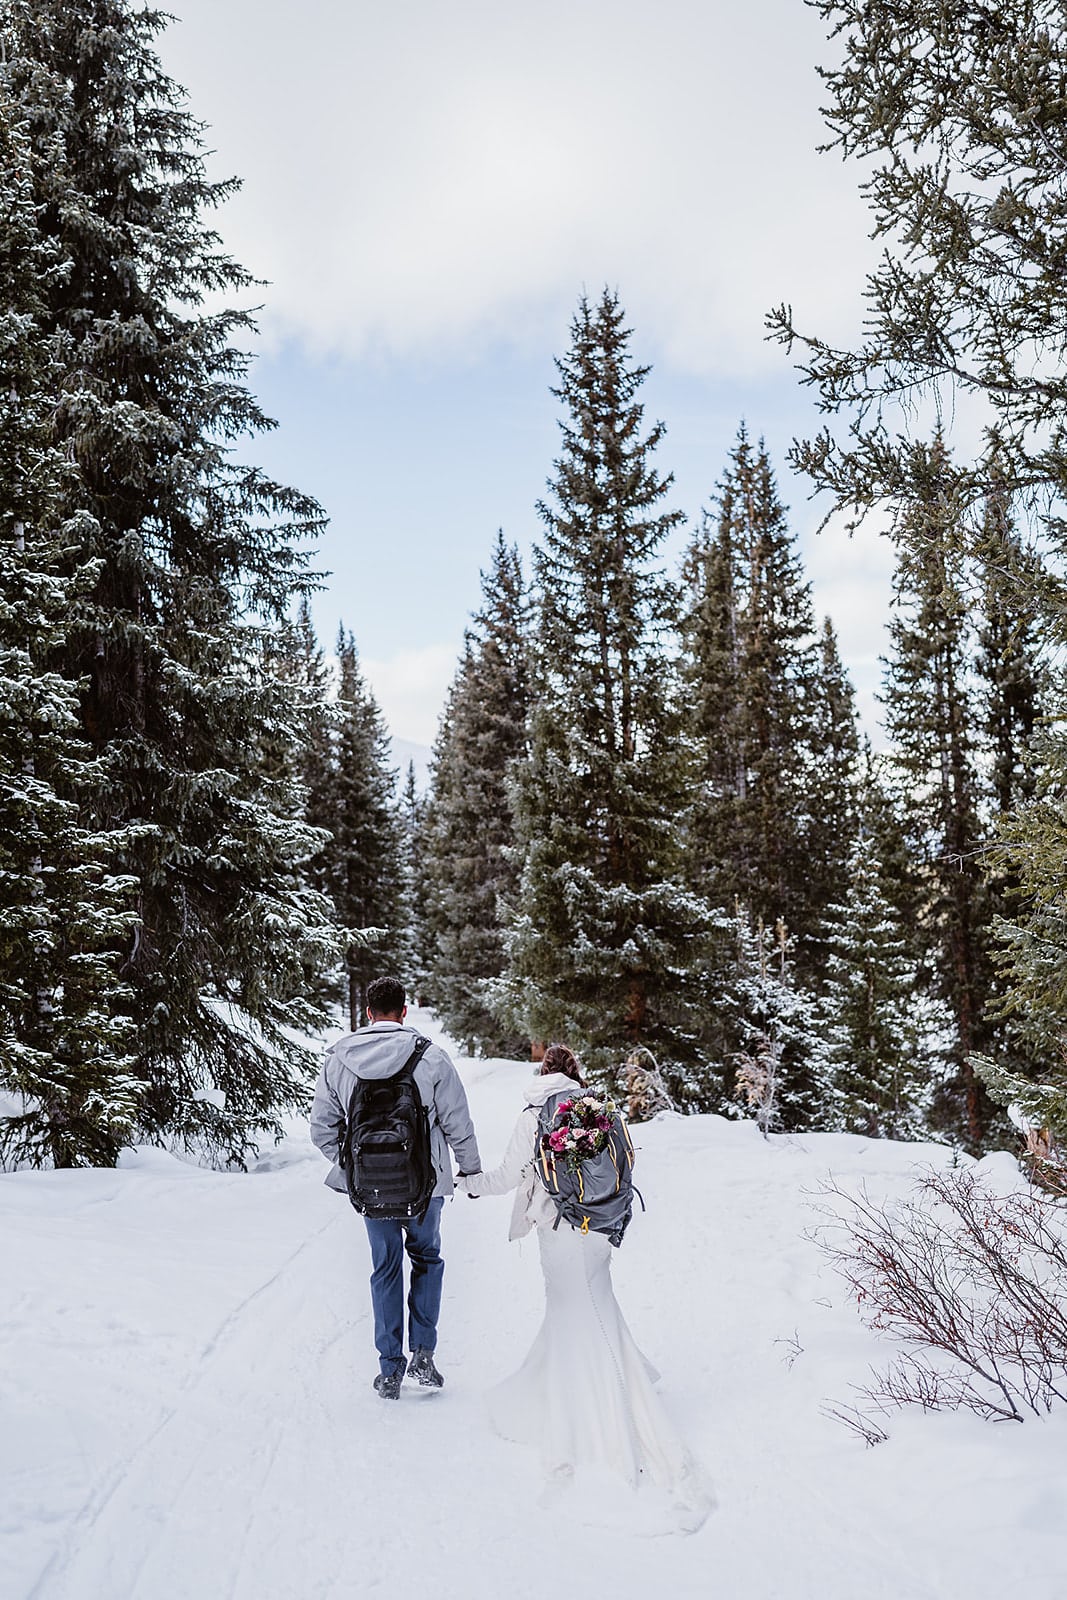 Winter Breckenridge elopement in Colorado.